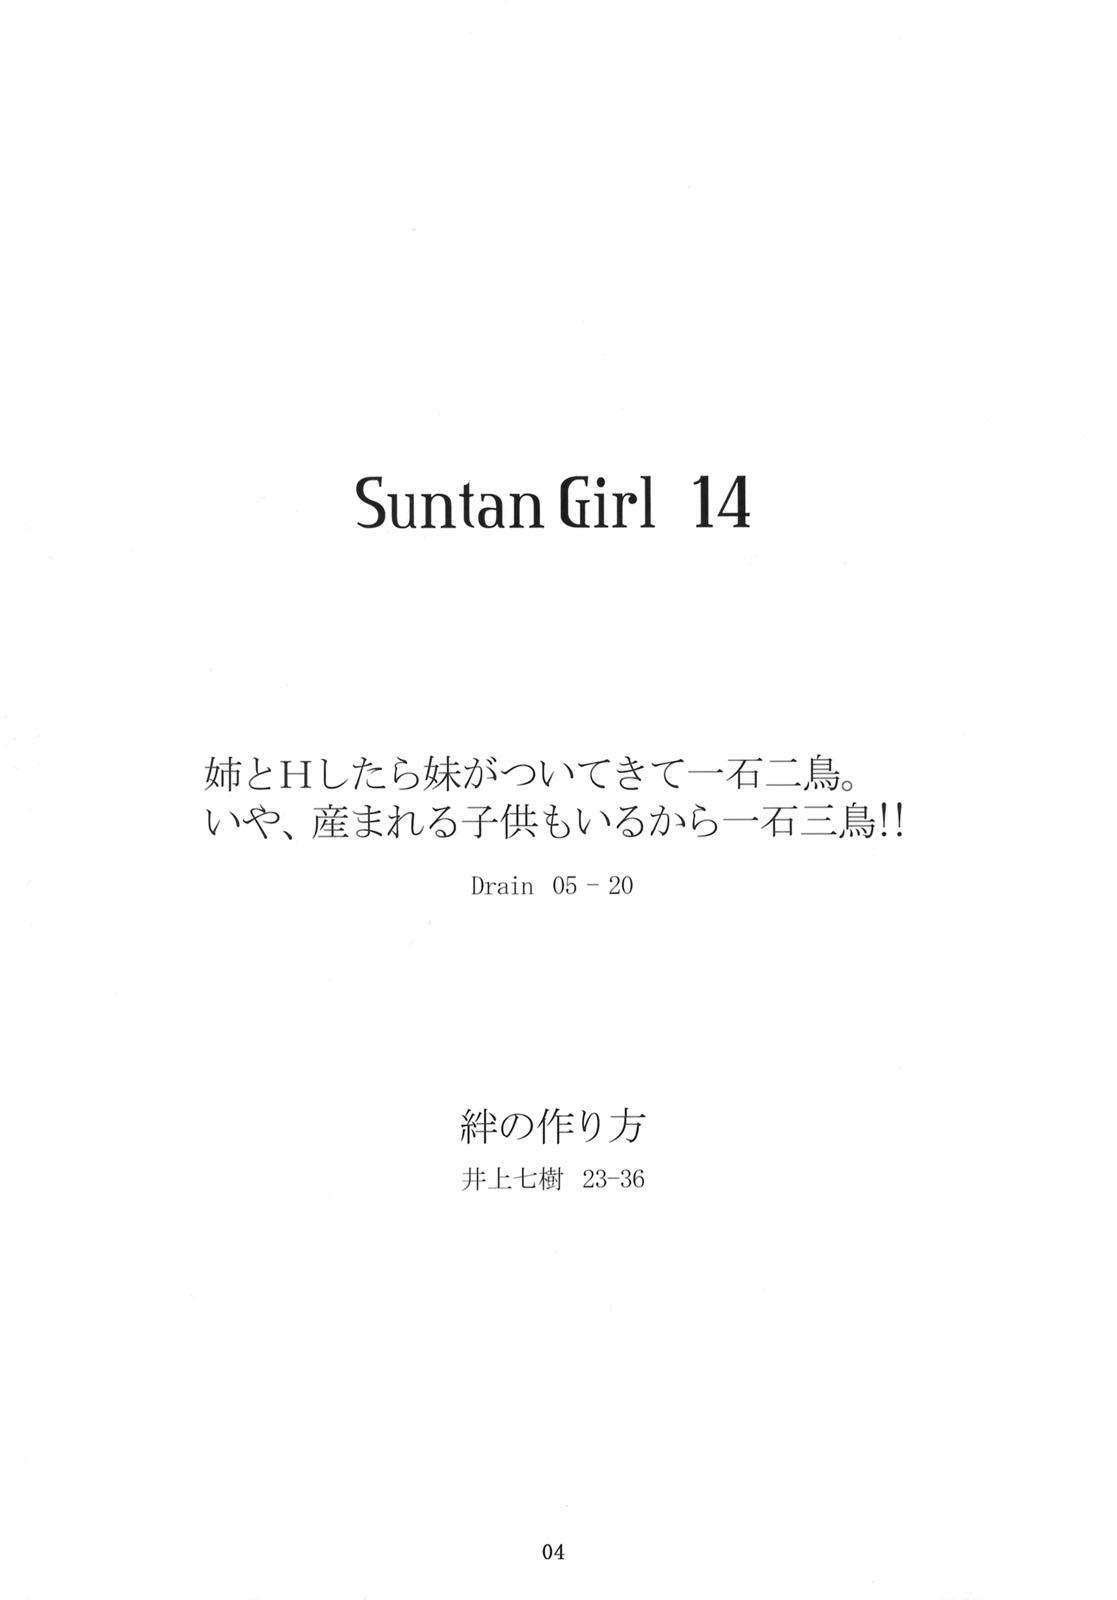 Suntan Girl 14 2